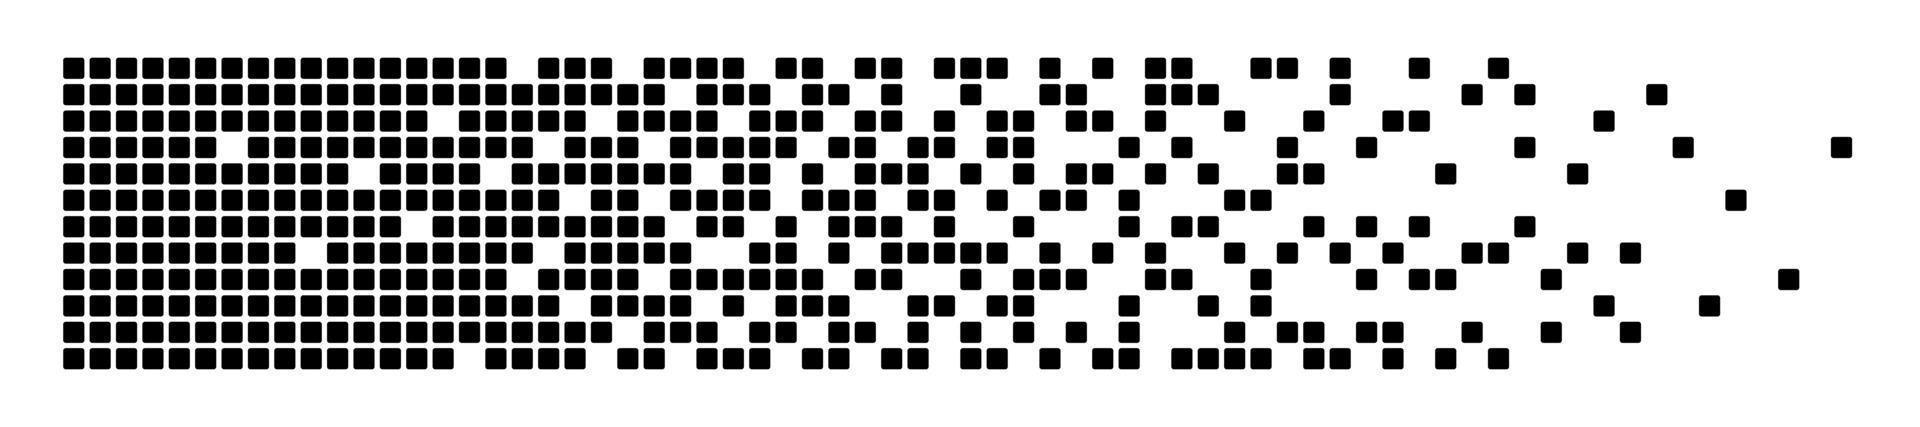 pixel desintegratie achtergrond. verval effect. verspreid gestippeld patroon. concept van desintegratie. abstracte pixelmozaïektextuur met eenvoudige vierkante deeltjes. vectorillustratie op witte achtergrond vector